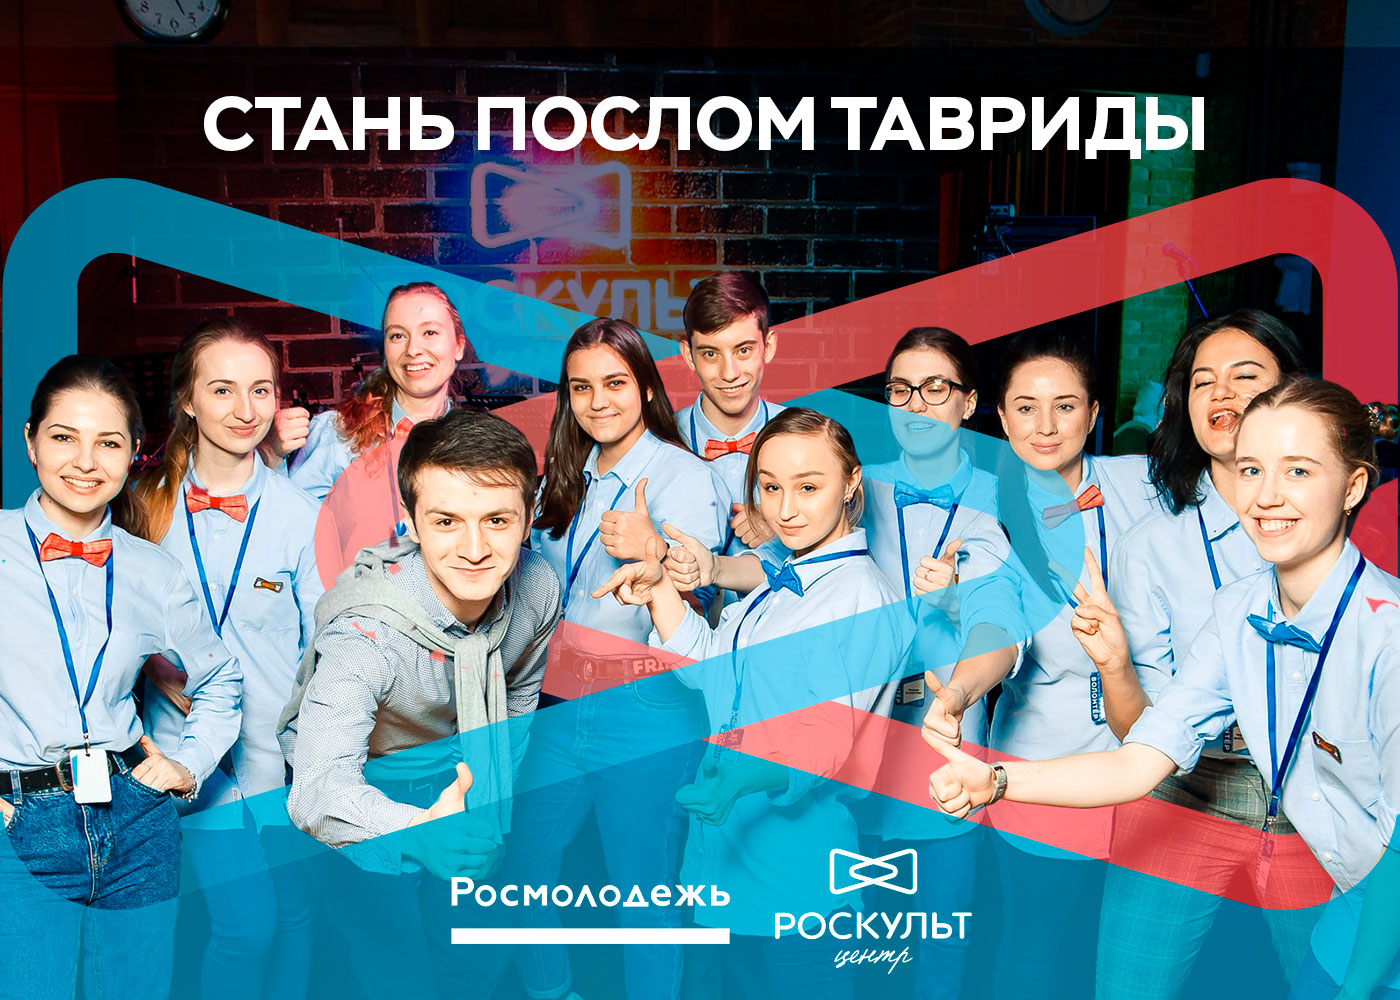 Роскультцентр объявил о старте Всероссийского молодежного конкурса &quot;Послы Тавриды&quot;